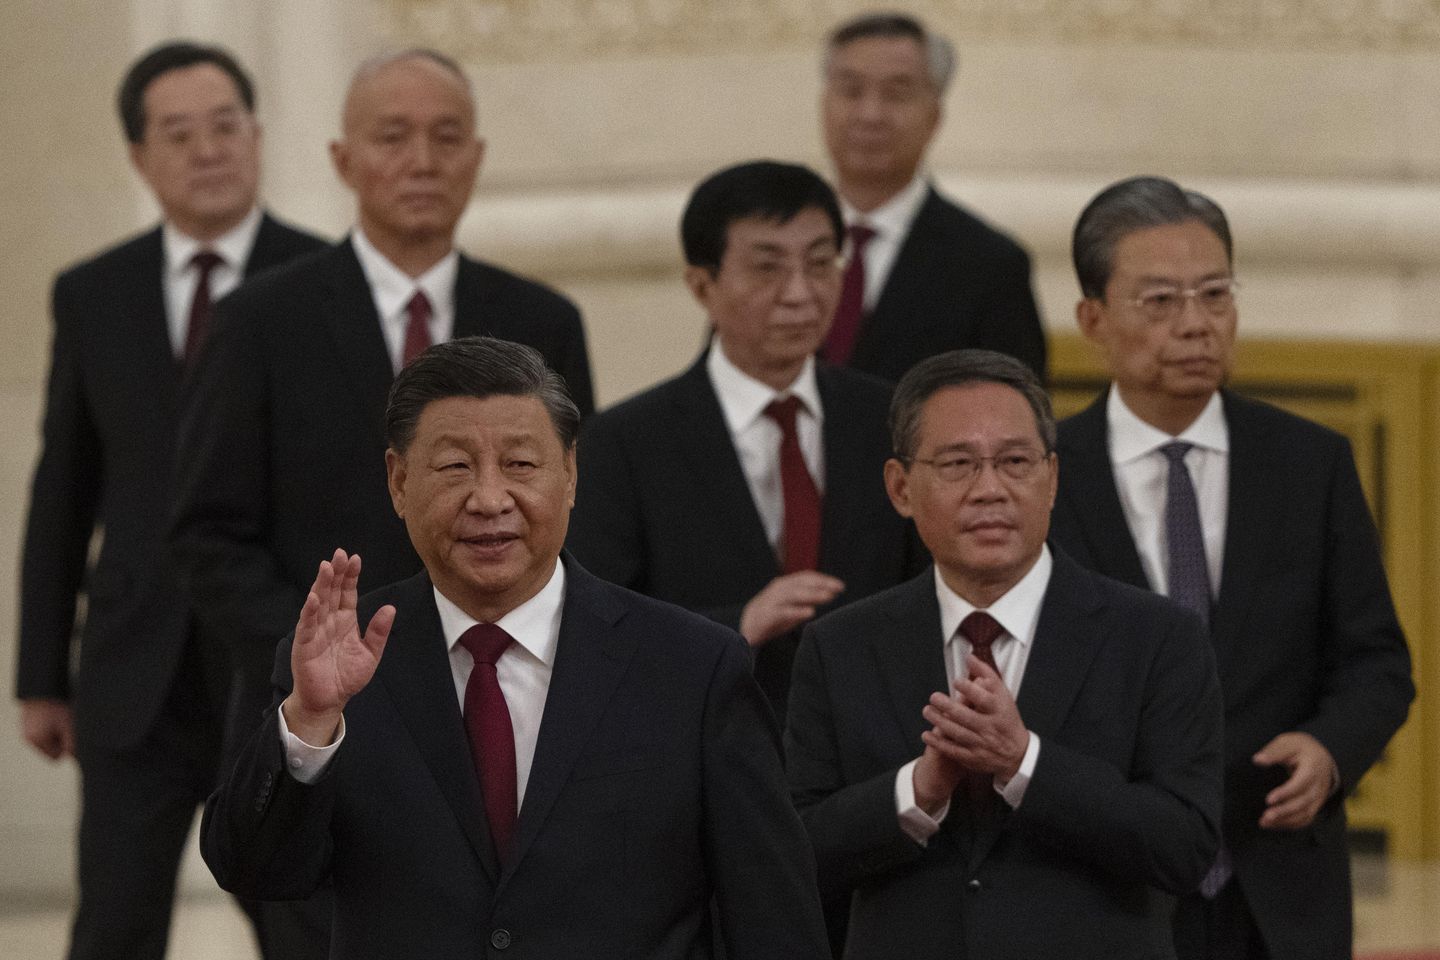 Dünya, Xi Jinping'in üçüncü döneminde Çin ile gerginlikle karşı karşıya